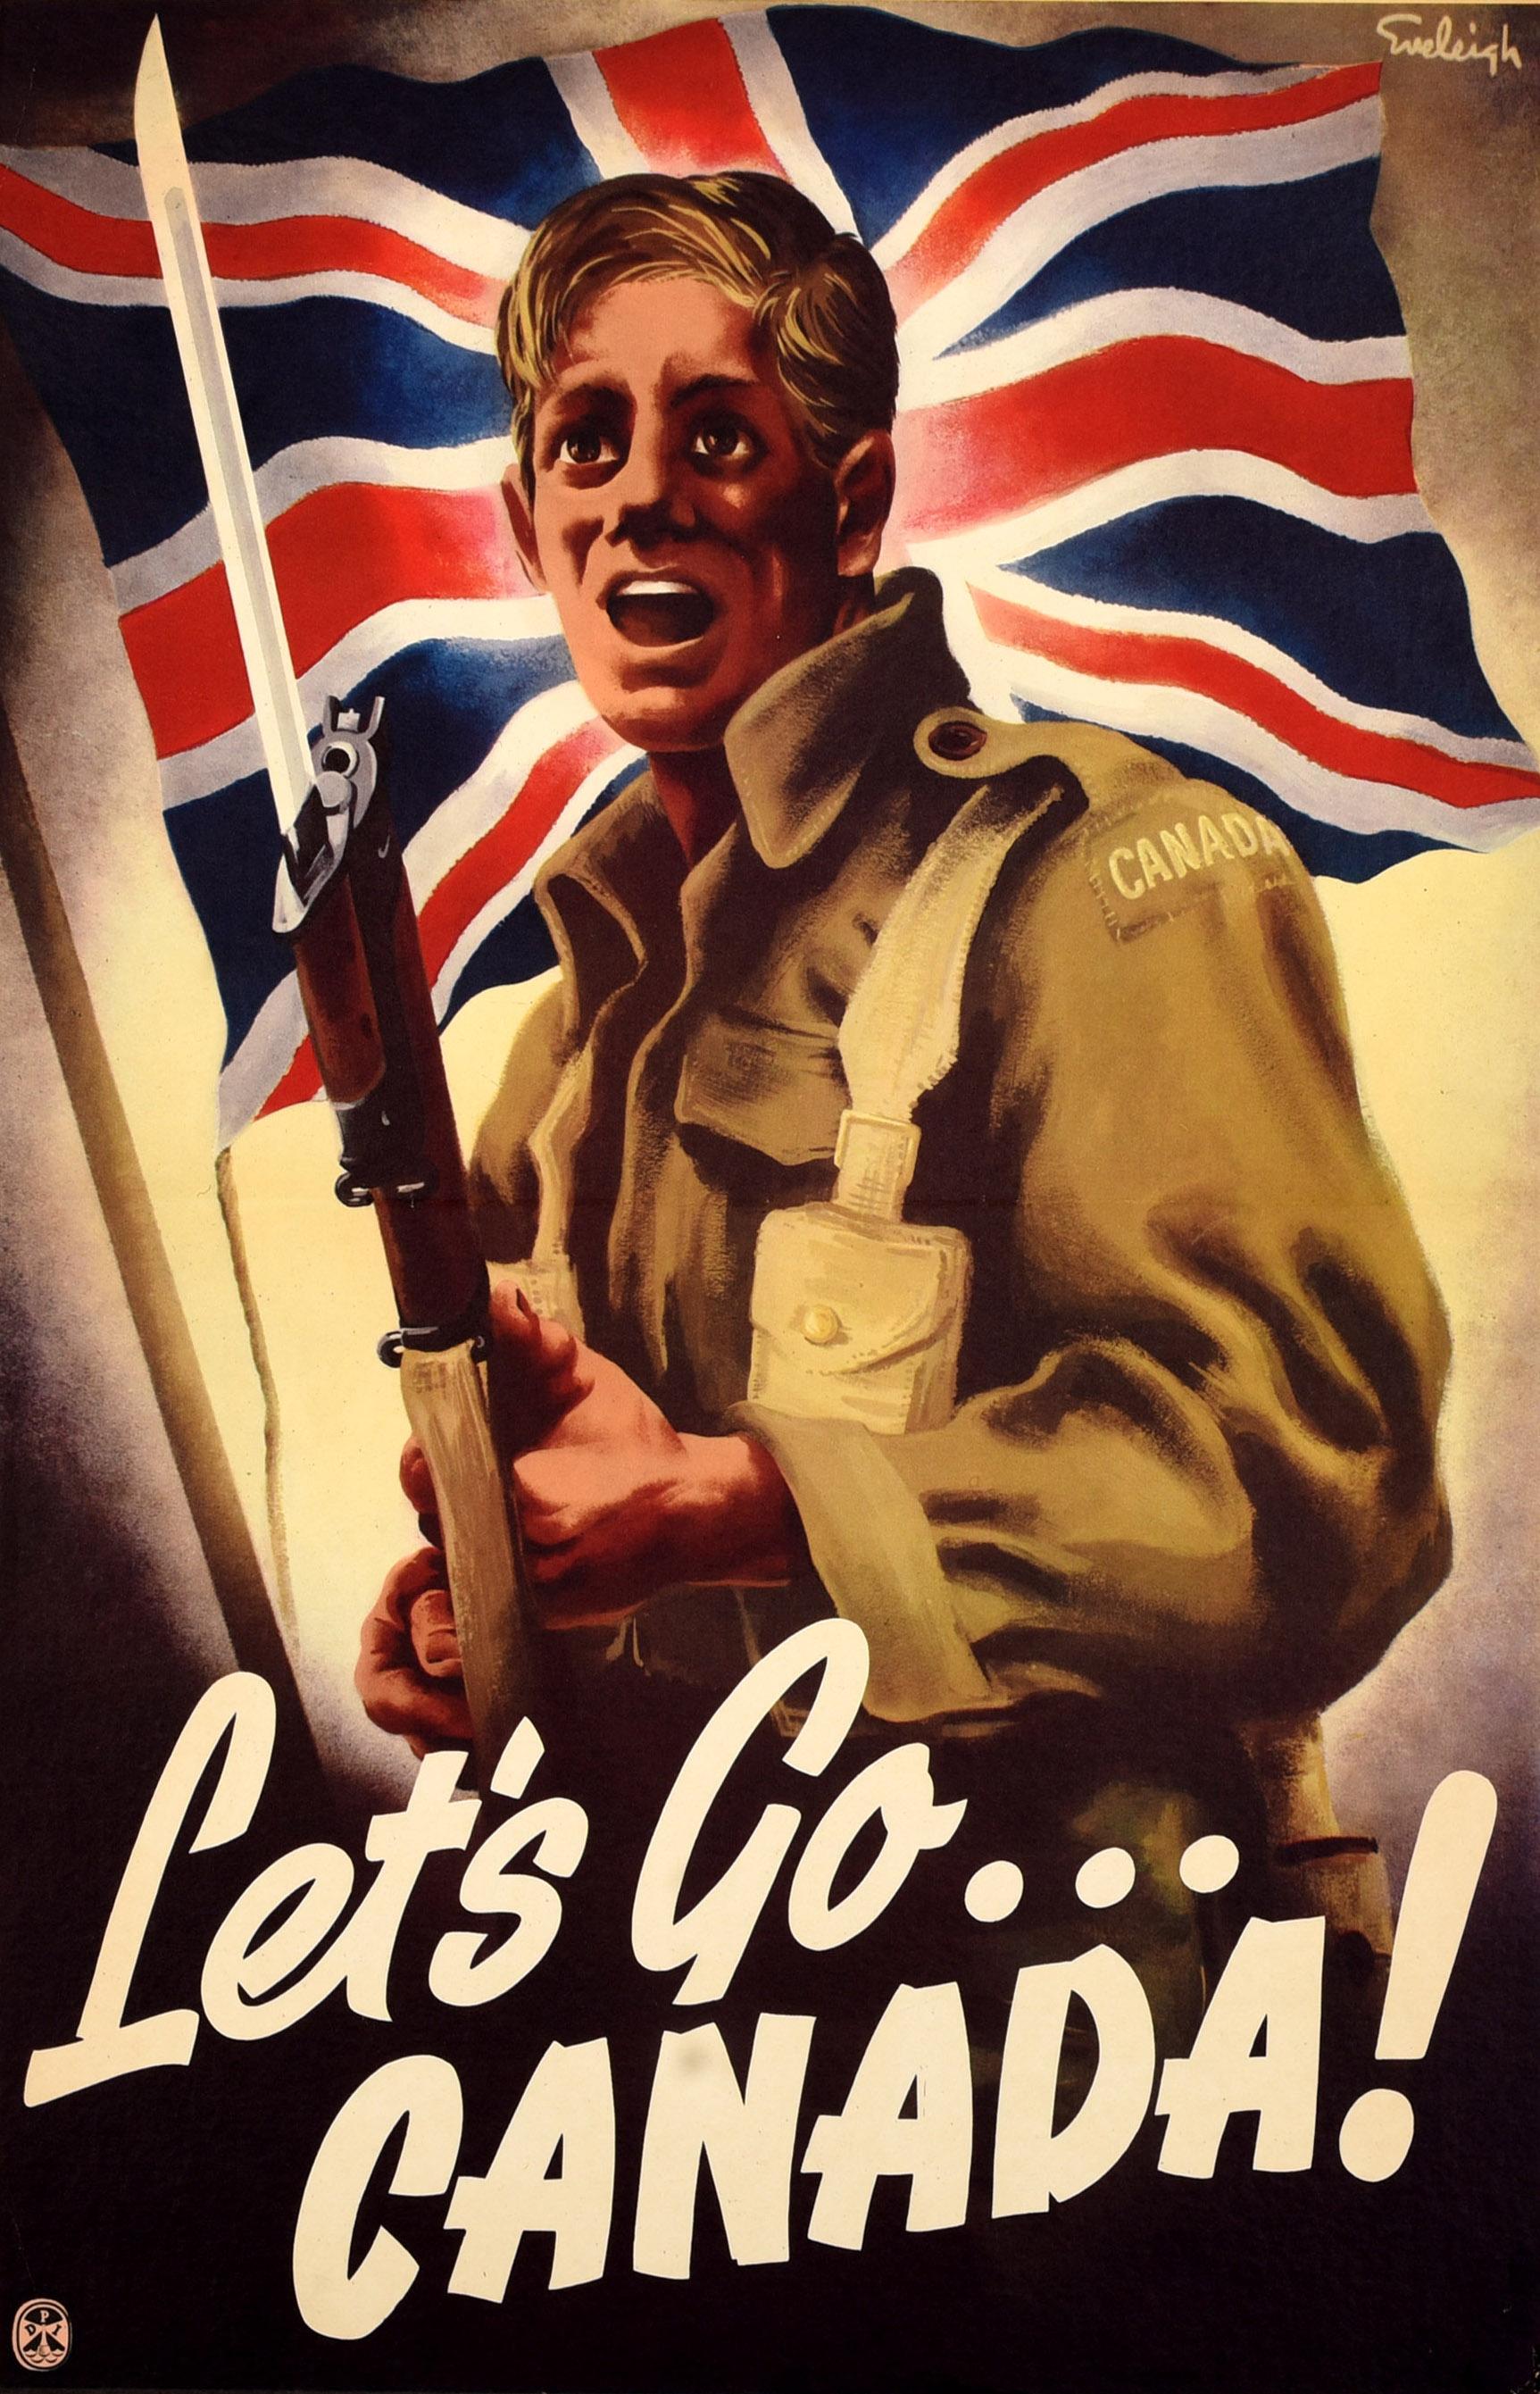 Affiche originale de propagande canadienne de la Seconde Guerre mondiale - Let's Go... Canada ! - publié par le directeur de l'information publique sous l'autorité de l'honorable J.T. Thorson, ministre des Services nationaux de guerre, Ottawa.